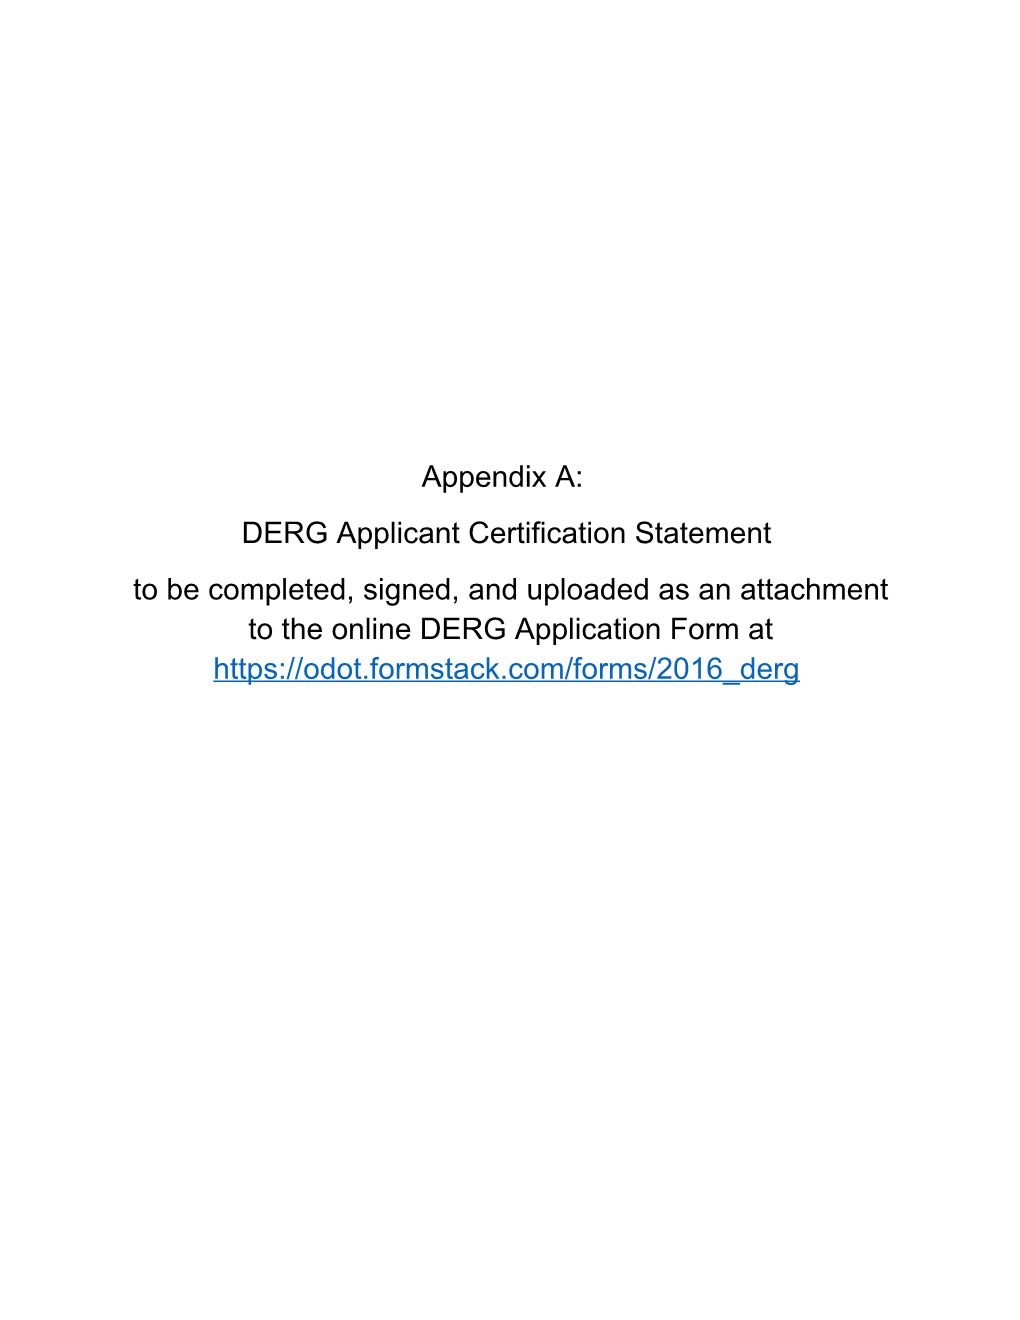 DERG Applicant Certification Statement